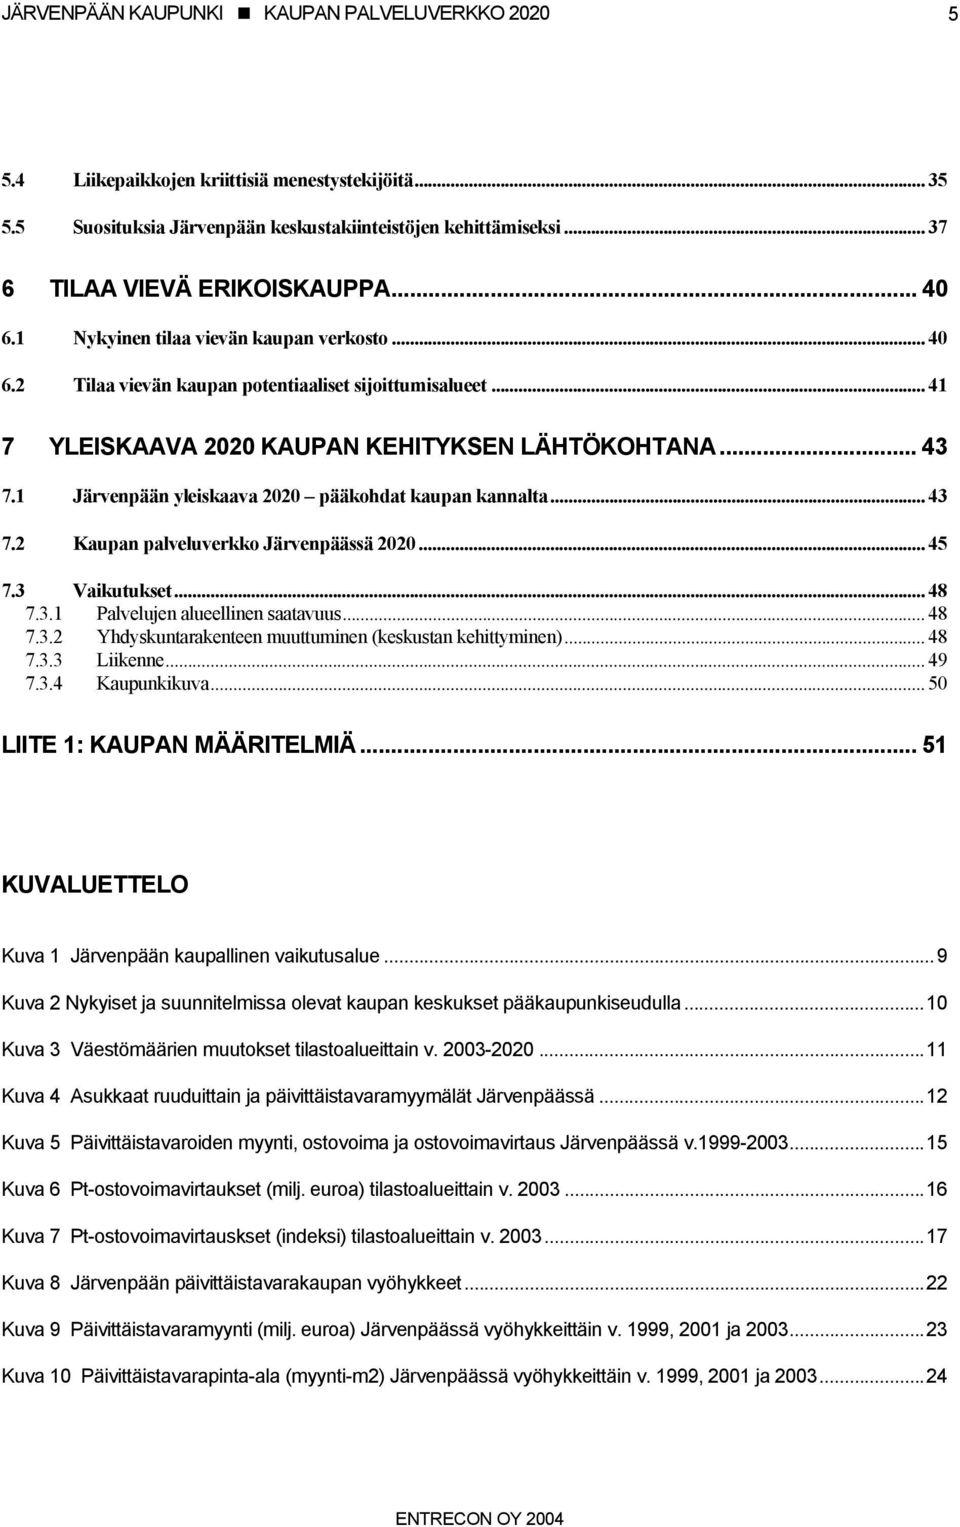 1 Järvenpään yleiskaava 2020 pääkohdat kaupan kannalta... 43 7.2 Kaupan palveluverkko Järvenpäässä 2020... 45 7.3 Vaikutukset... 48 7.3.1 Palvelujen alueellinen saatavuus... 48 7.3.2 Yhdyskuntarakenteen muuttuminen (keskustan kehittyminen).